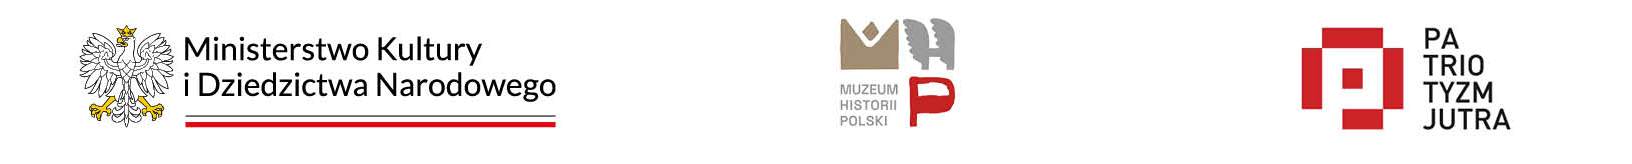 Logotypy (od lewej): Ministerstwa Kultury i Dziedzictwa Narodowego, Muzeum Historii Polski, programu "Patriotyzm Jutra"